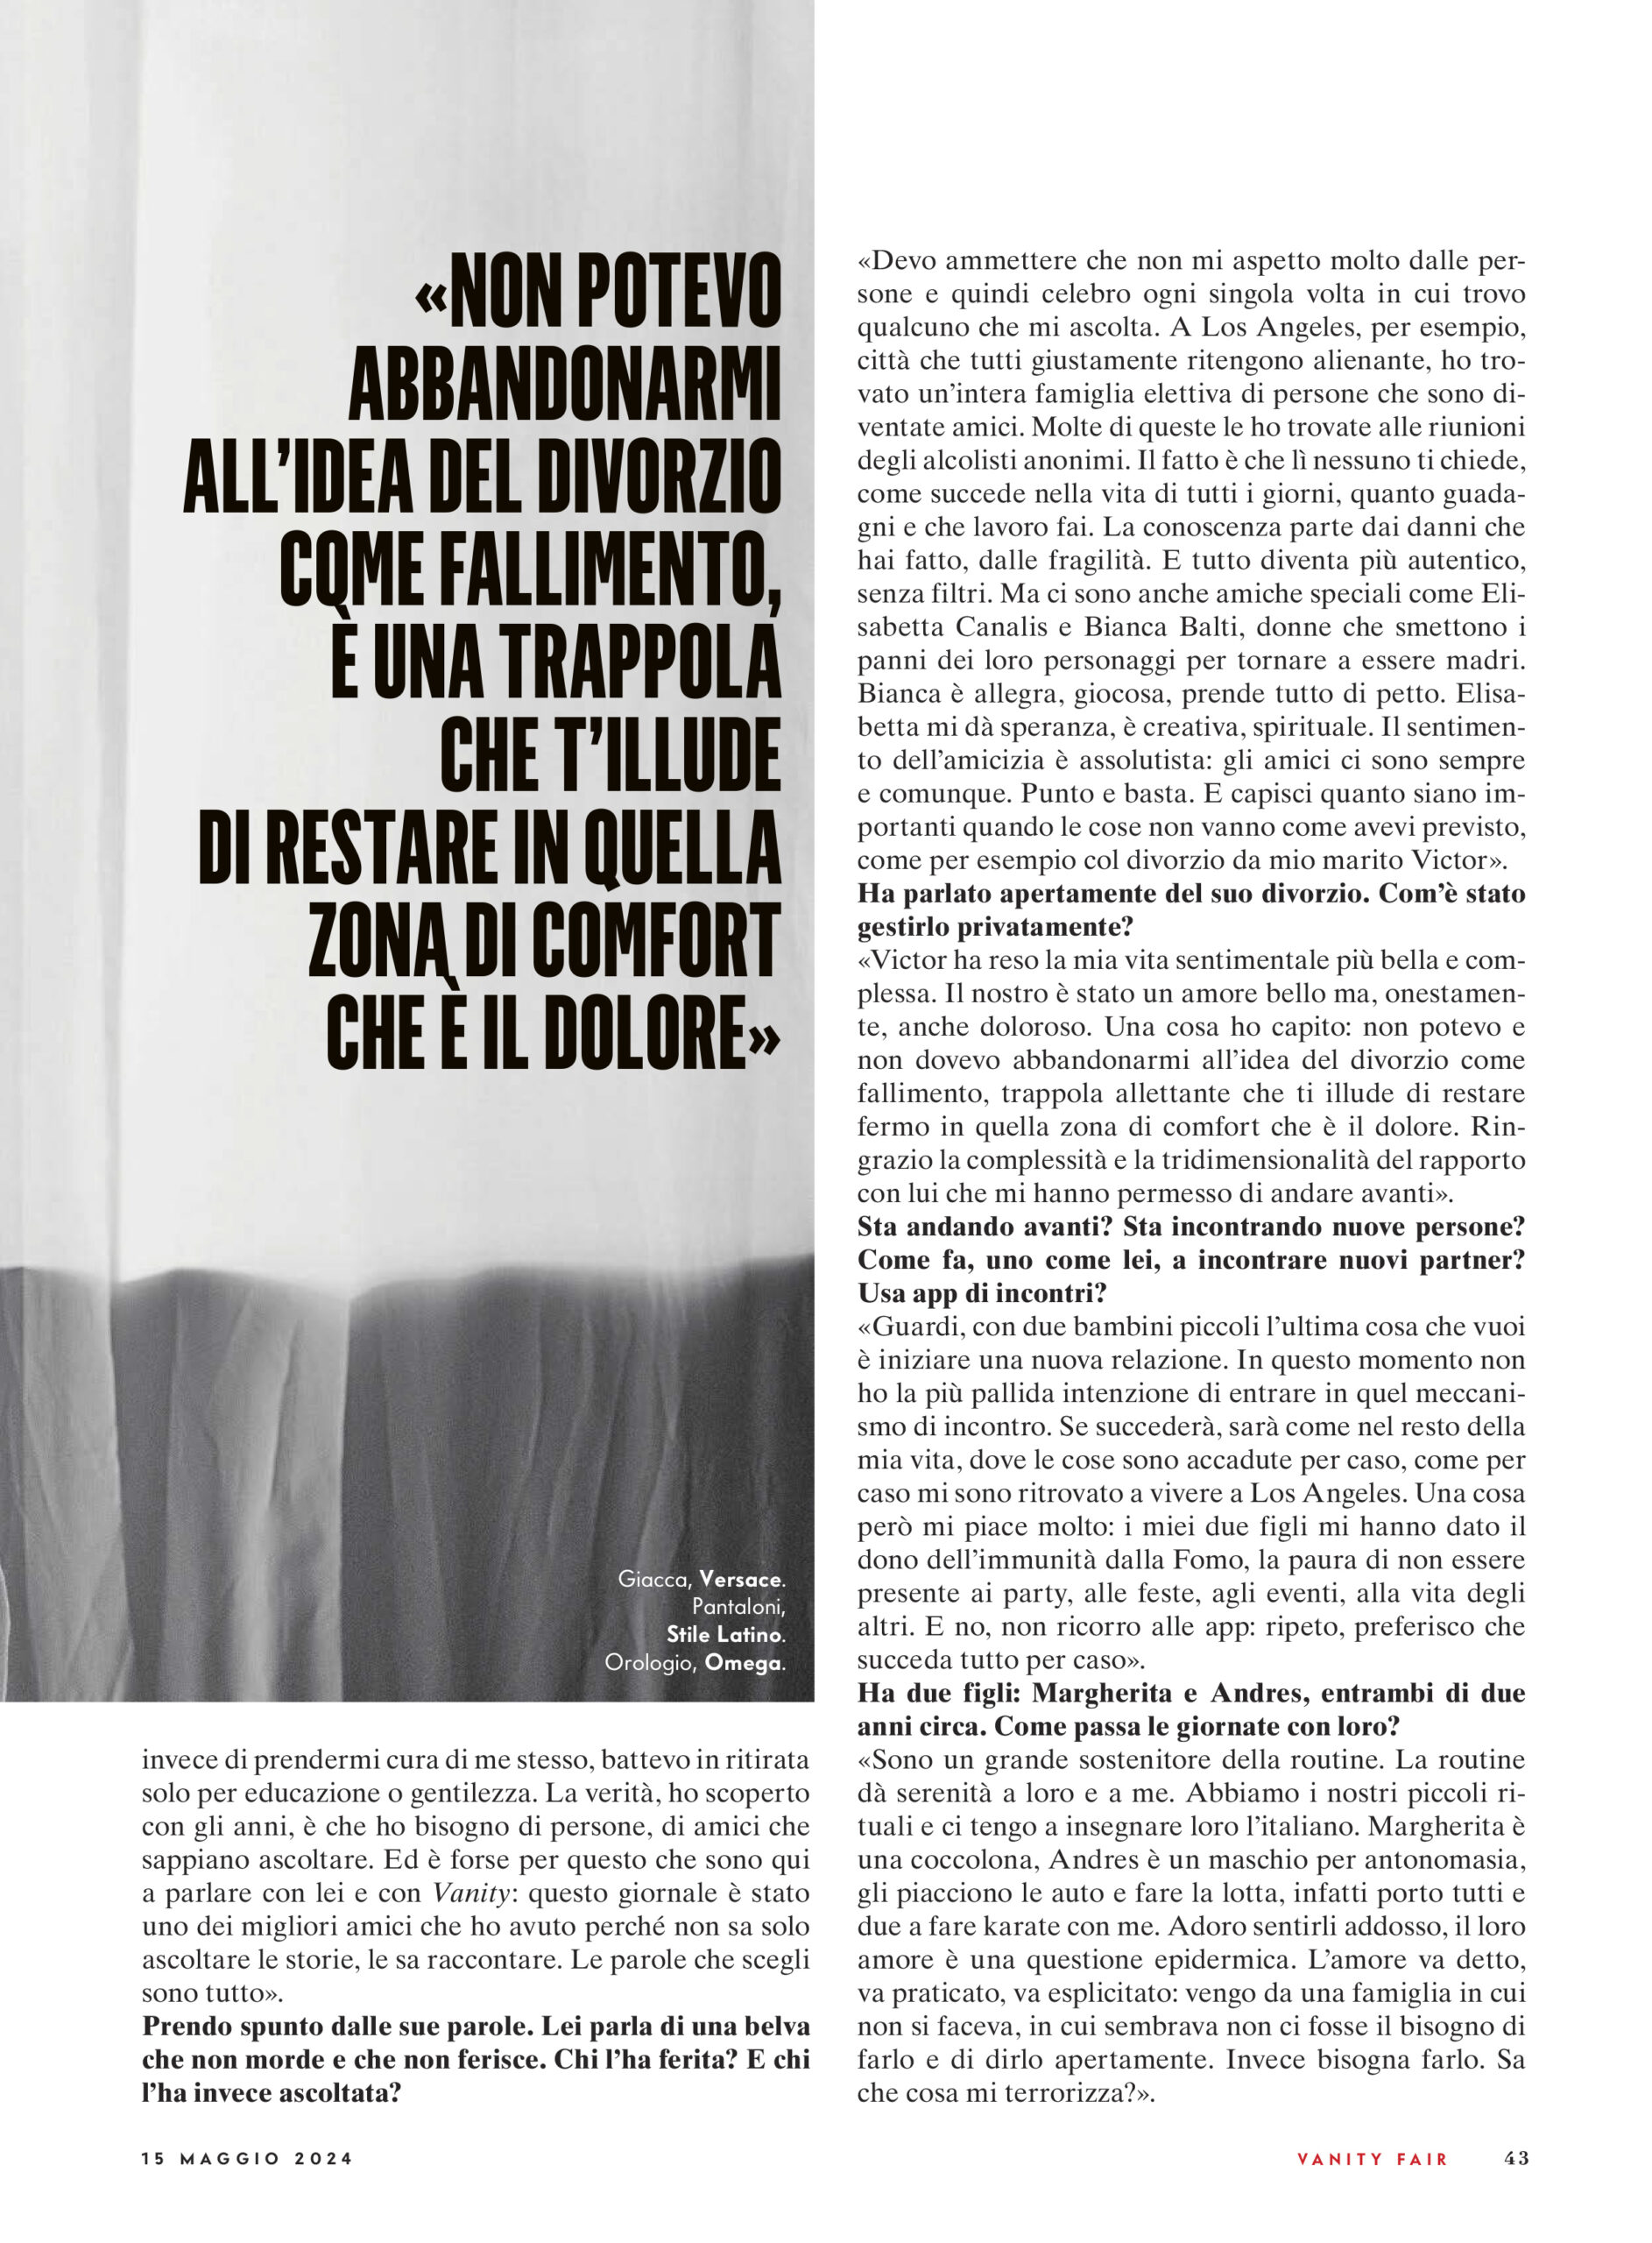 Tiziano Ferro Vanity Fair, by Walid Azami